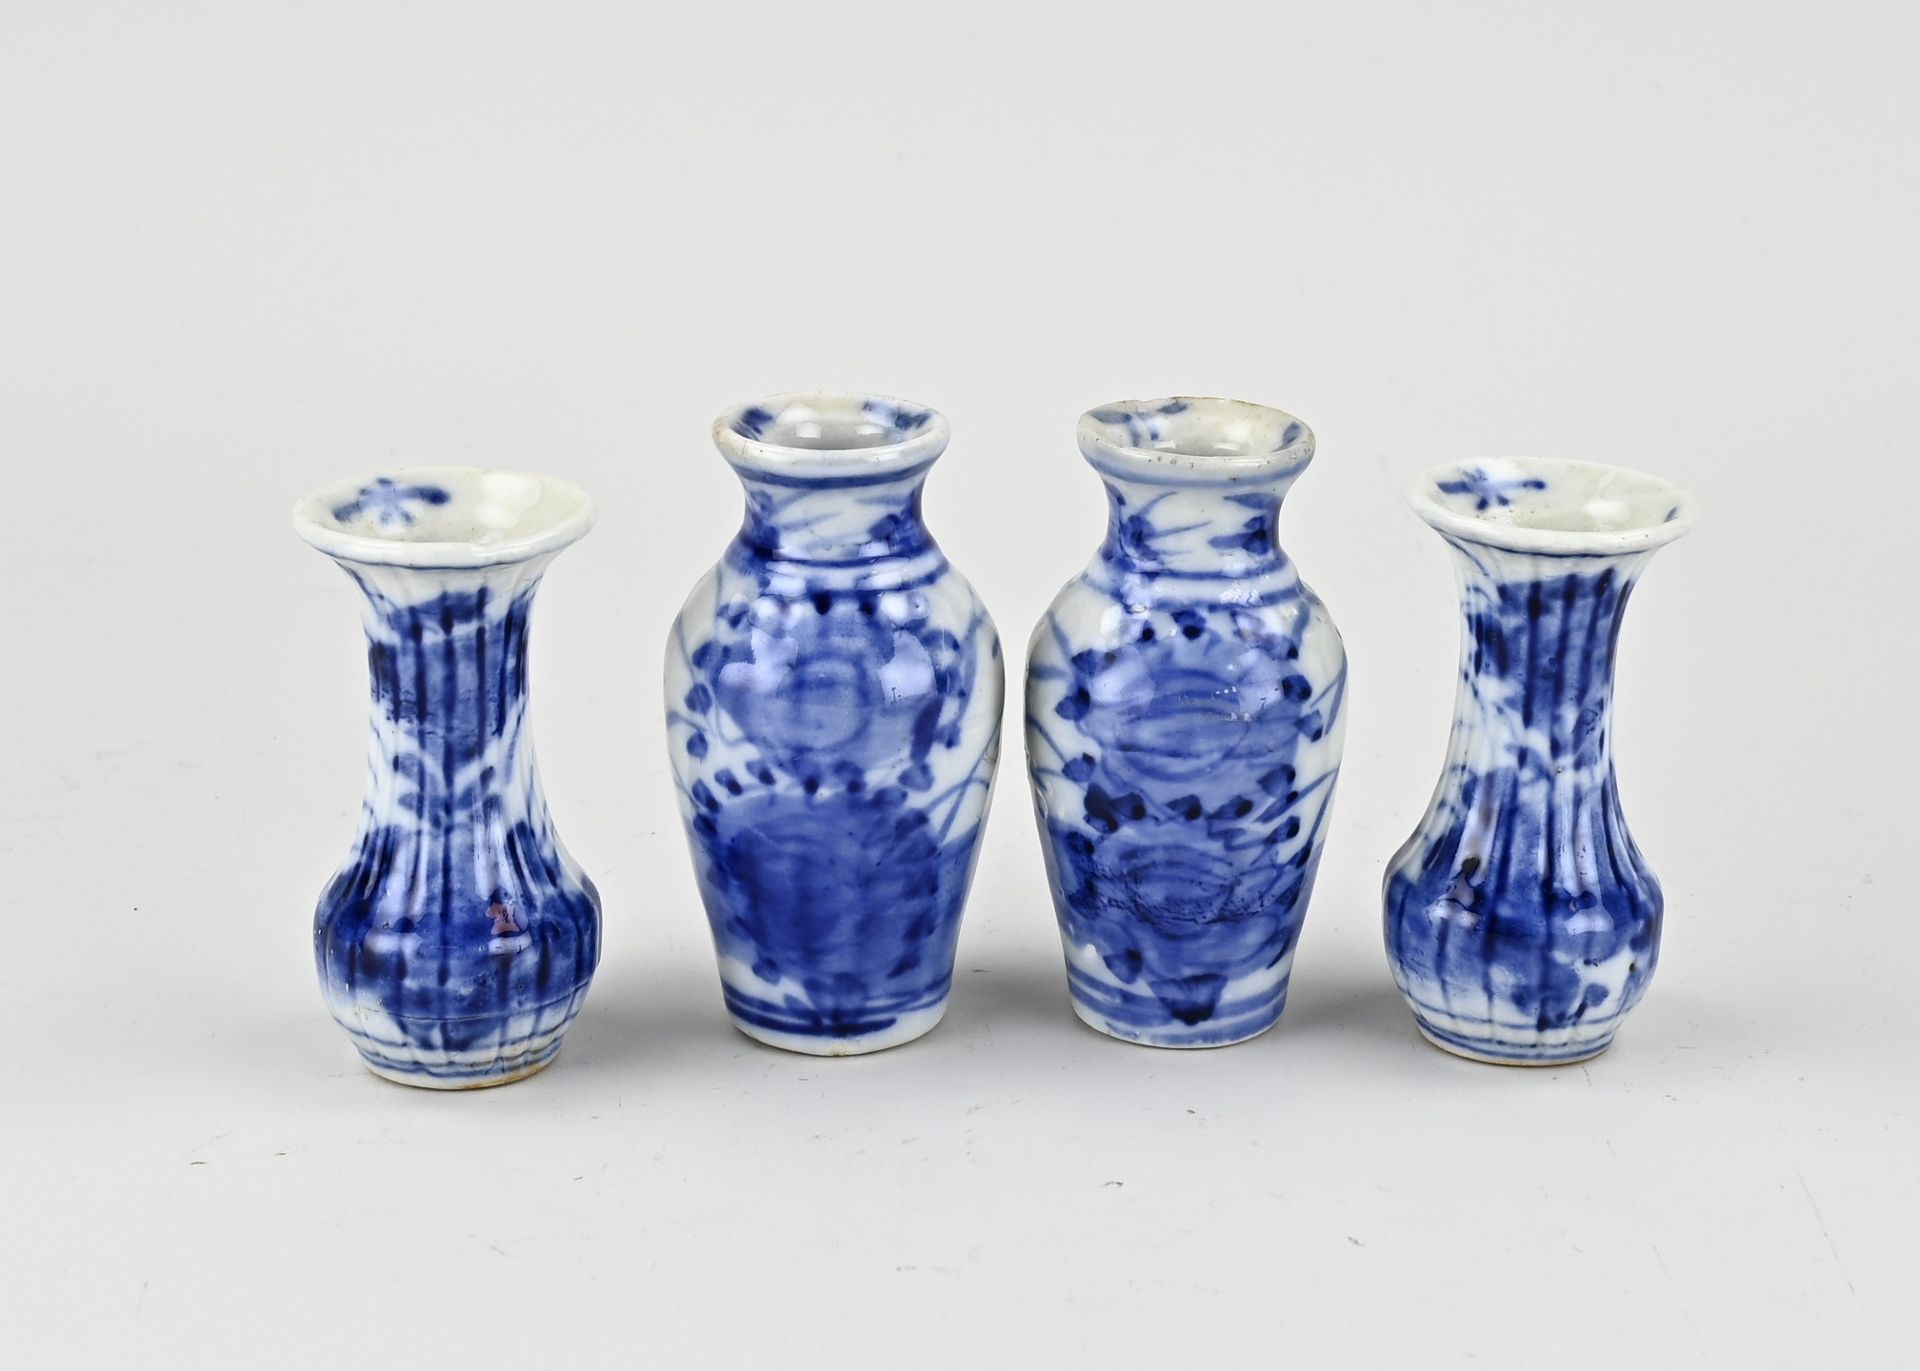 Four Japanese mini vases, H 8 - 9 cm.